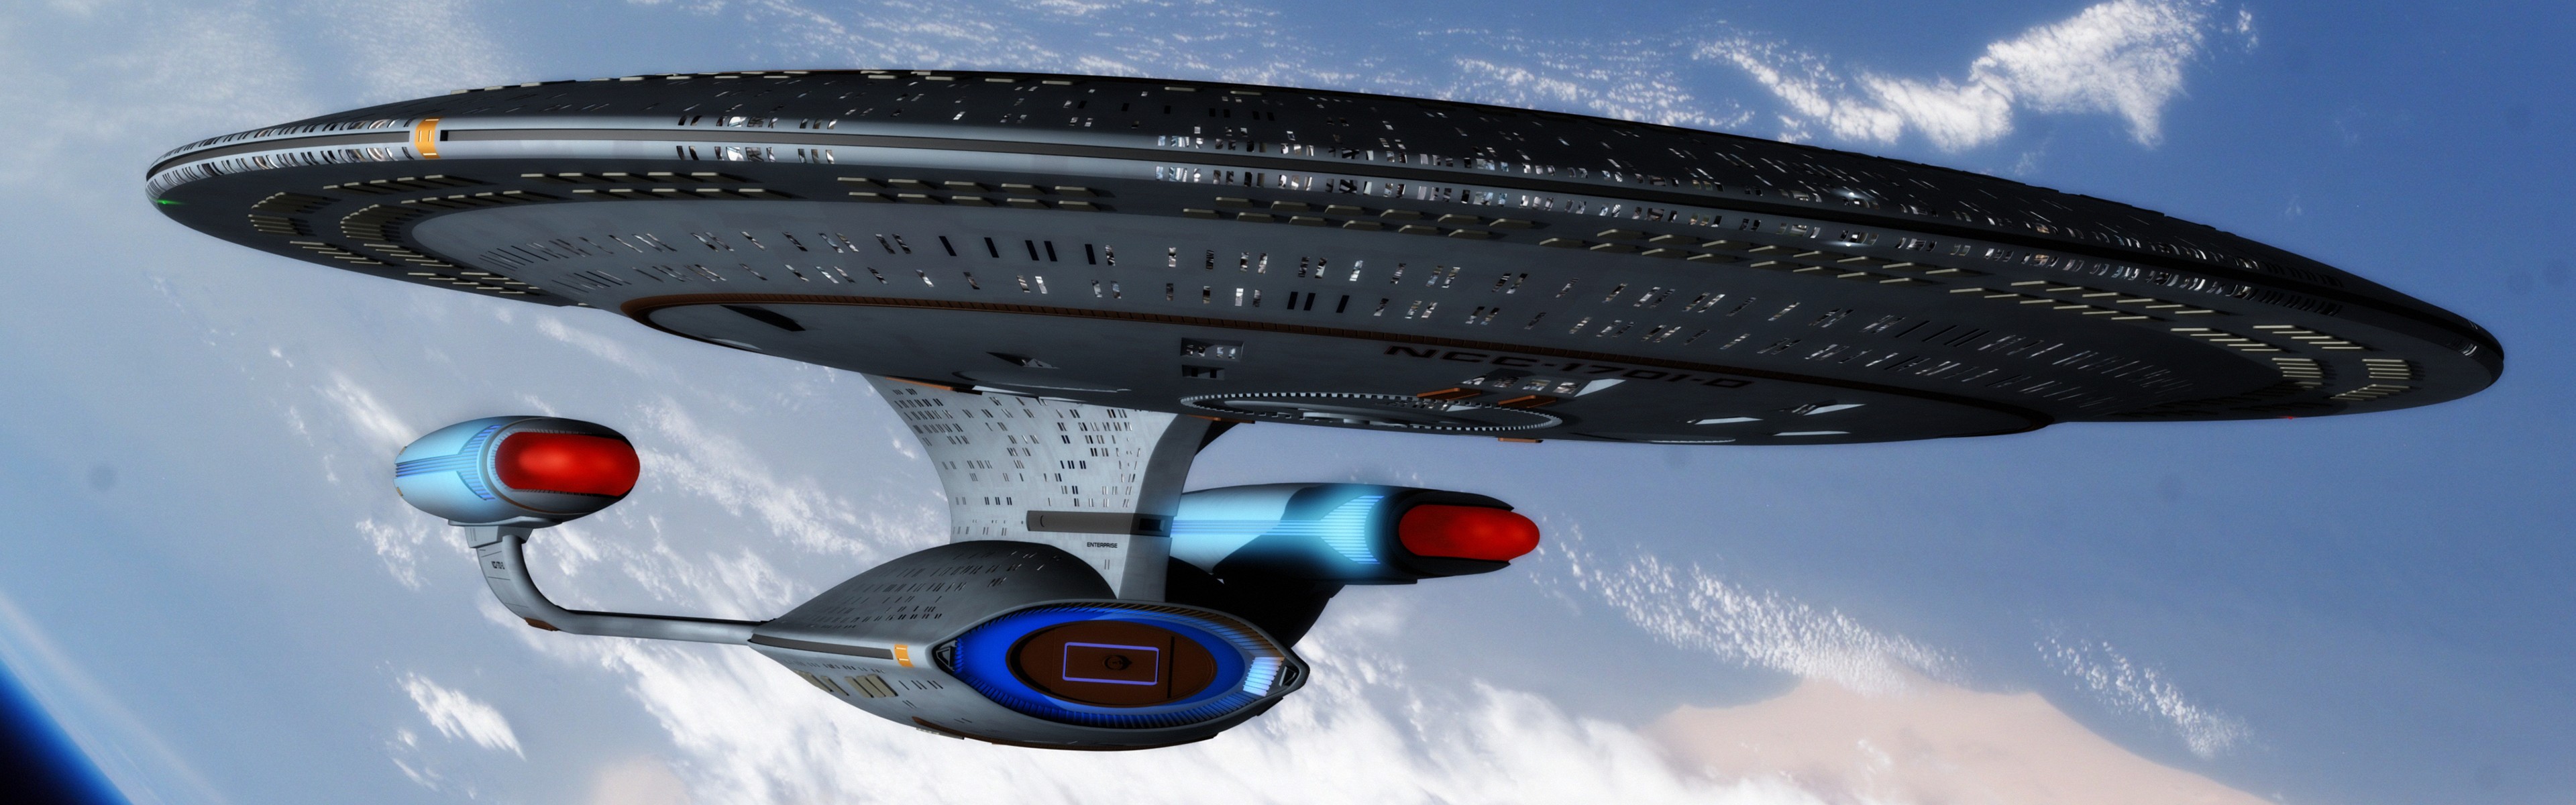 Star Trek USS Enterprise Spaceship Space Multiple Display Dual Monitors Star Trek TNG Orbital View 3840x1200